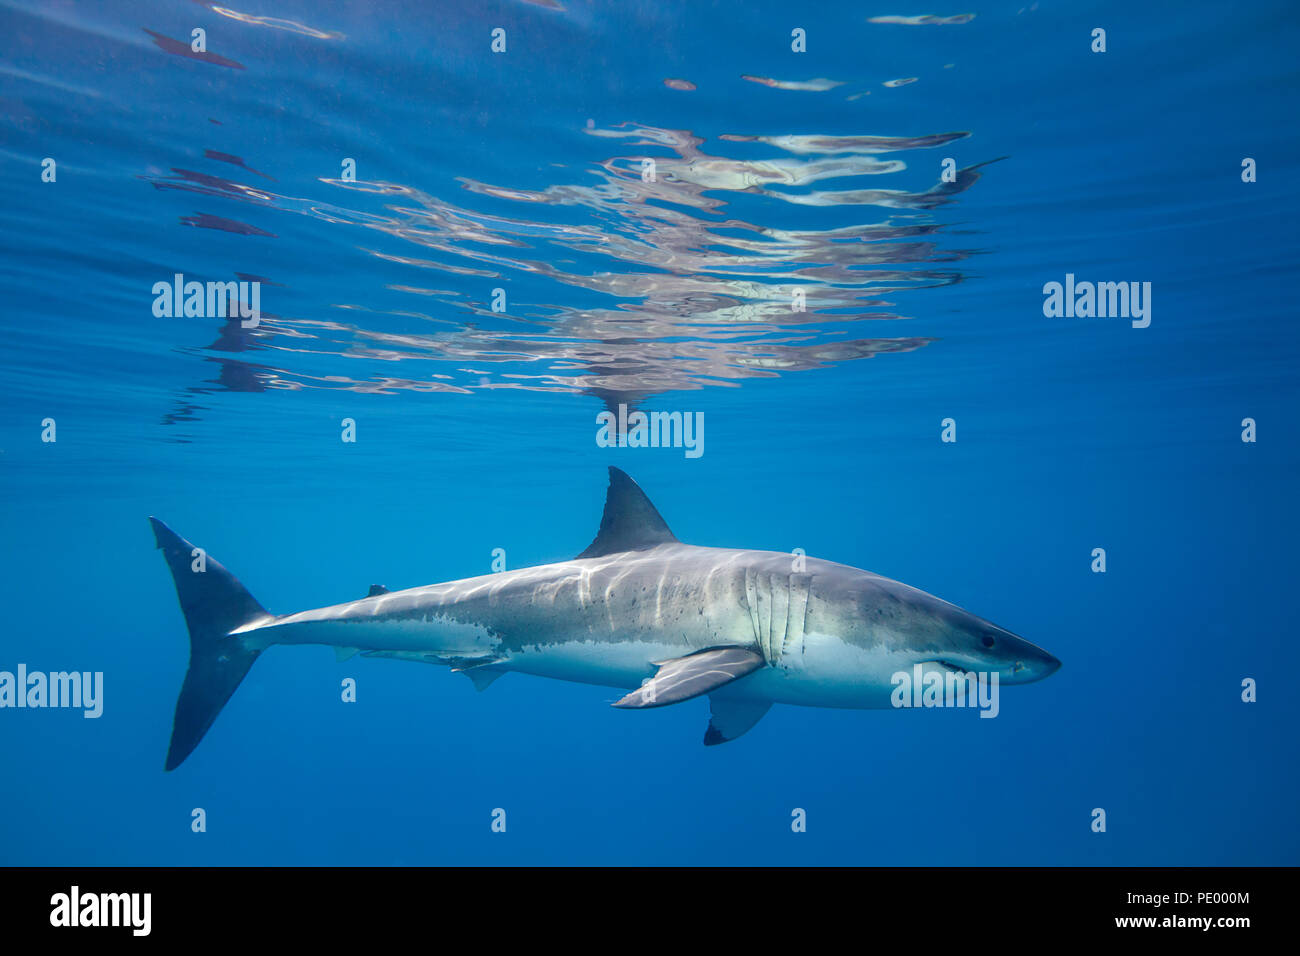 Ce grand requin blanc, Carcharodon carcharias, a été photographié juste au-dessous de la surface de glisse au large de l'île de Guadalupe, au Mexique. Banque D'Images